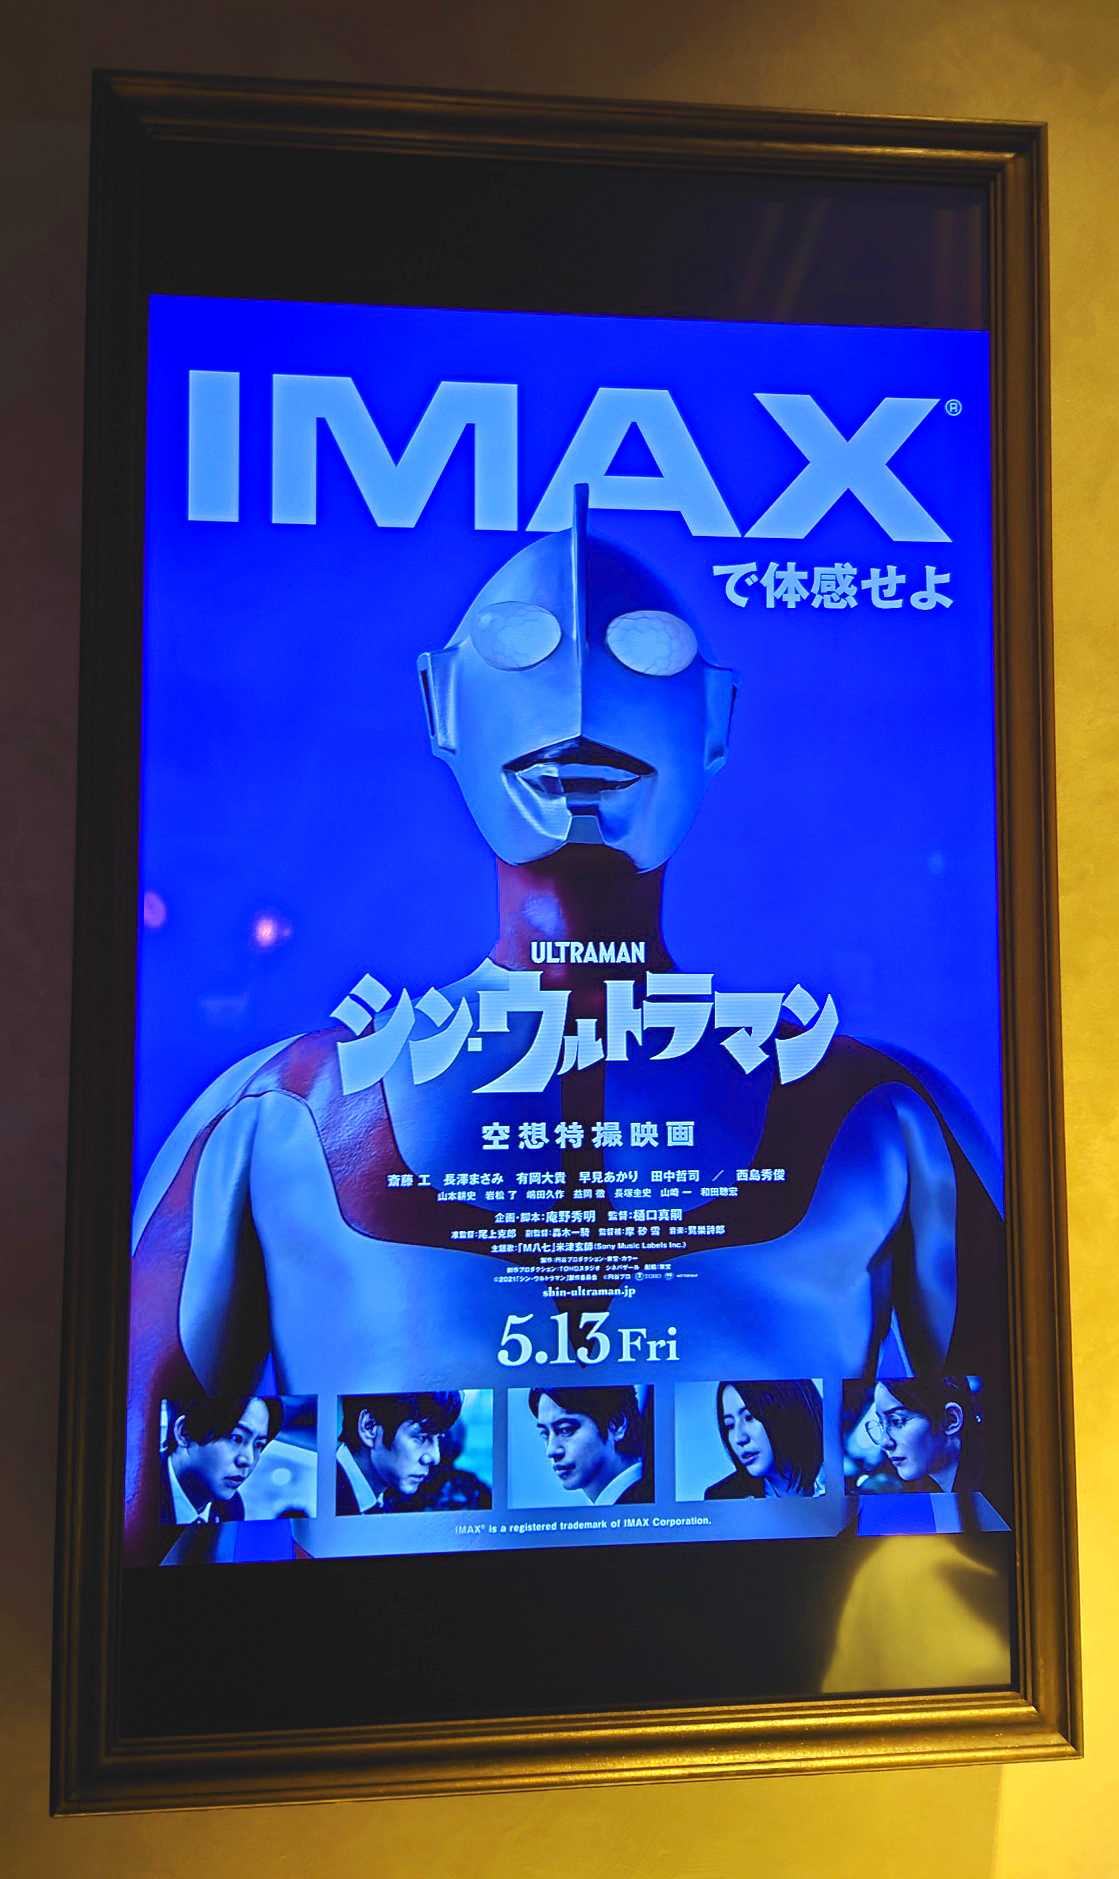 IMAXポスター『シン・ウルトラマン』​ ​​『IMAXで体感せよ』 ​​2022.5 